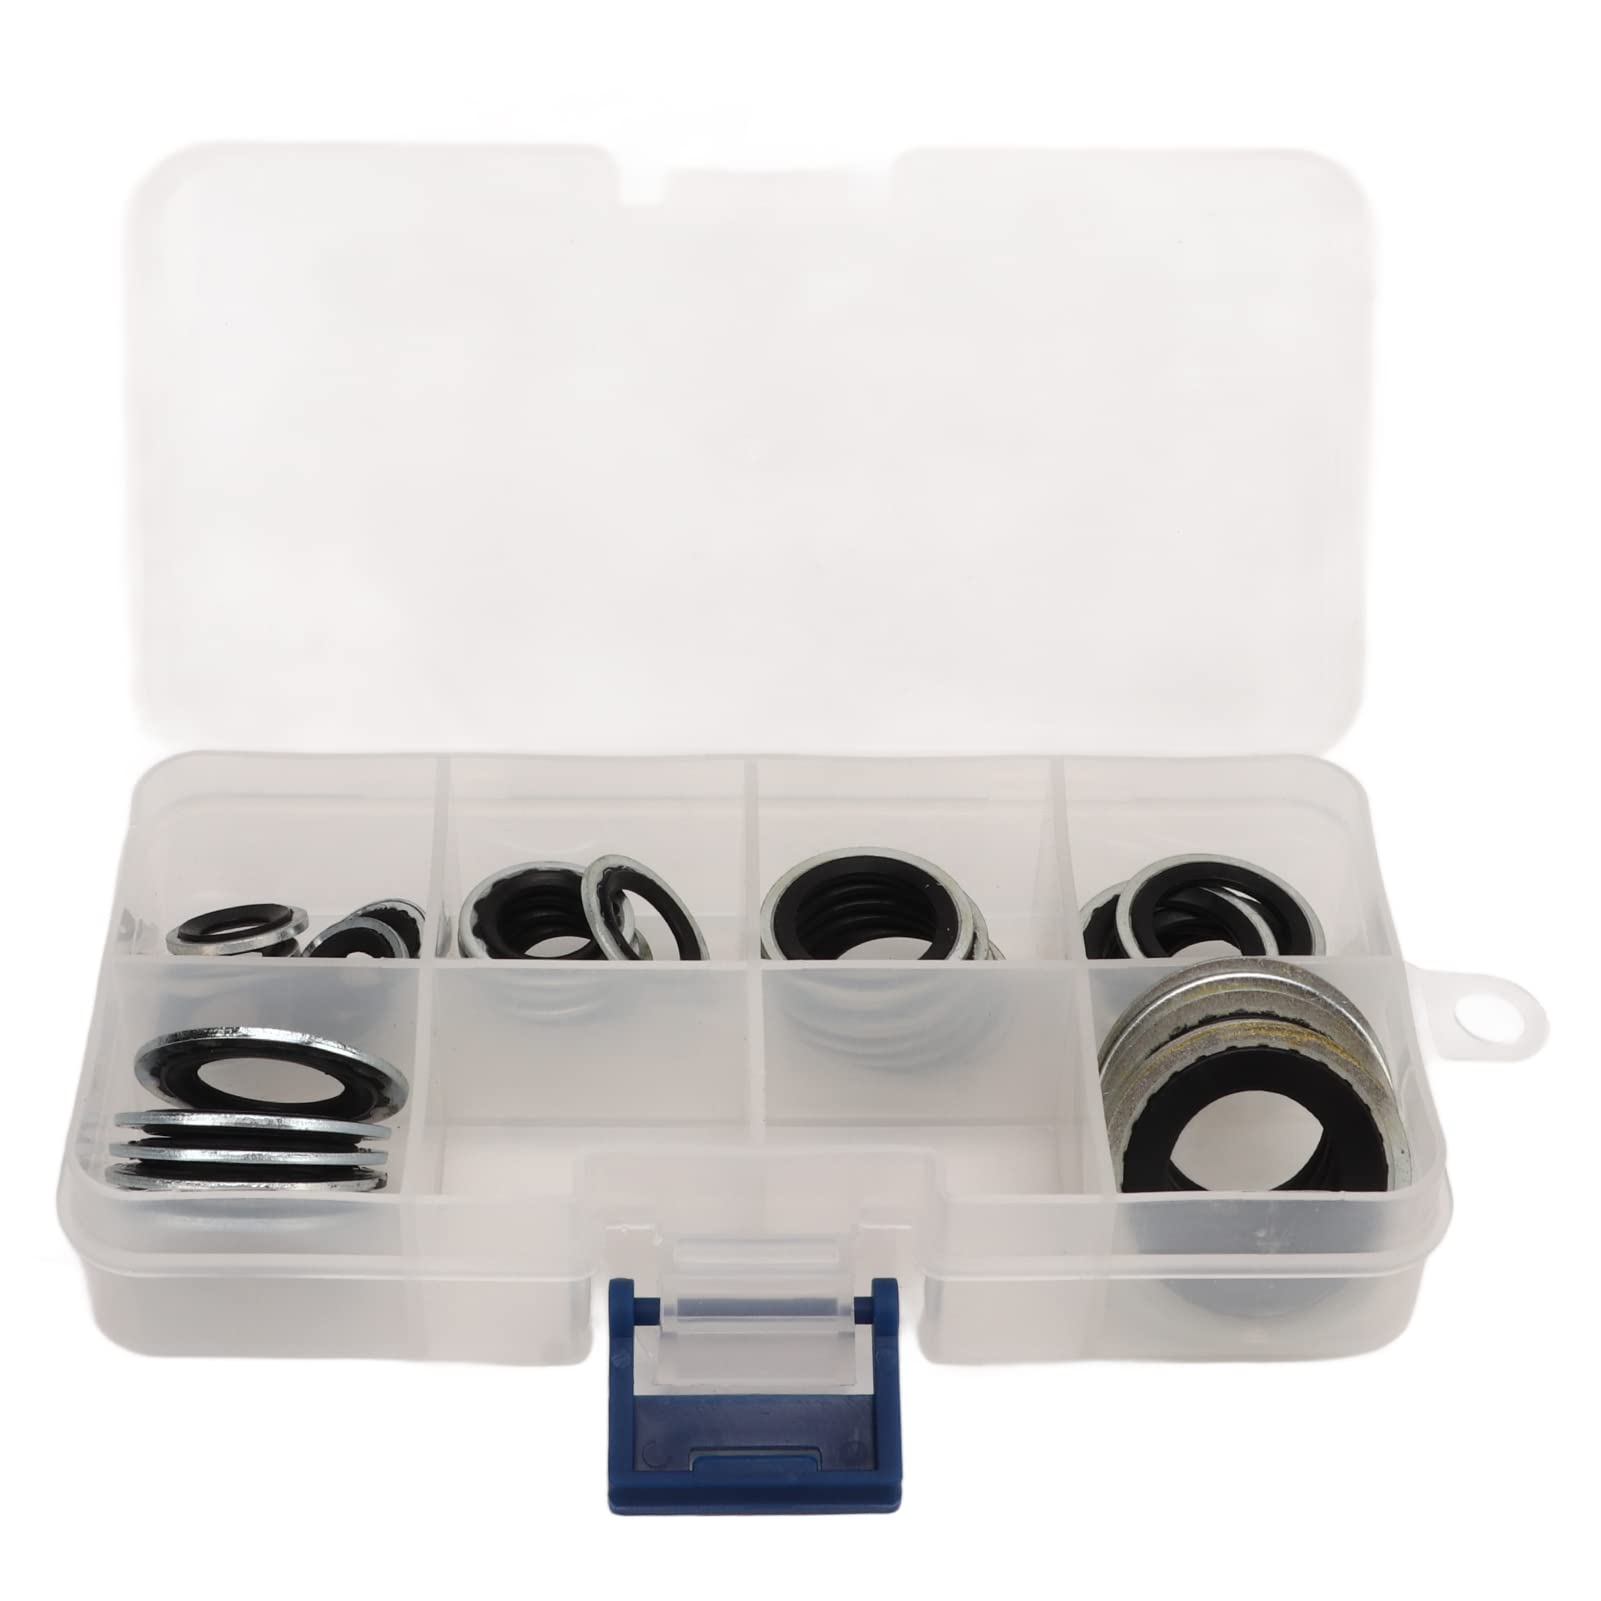 30 Stück Klimaanlage Dichtringe, Dichtungsring Set AC Kompressor Seal Kit mit transparentem Aufbewahrungskasten Universal Portable Lightweight für Auto von Akozon